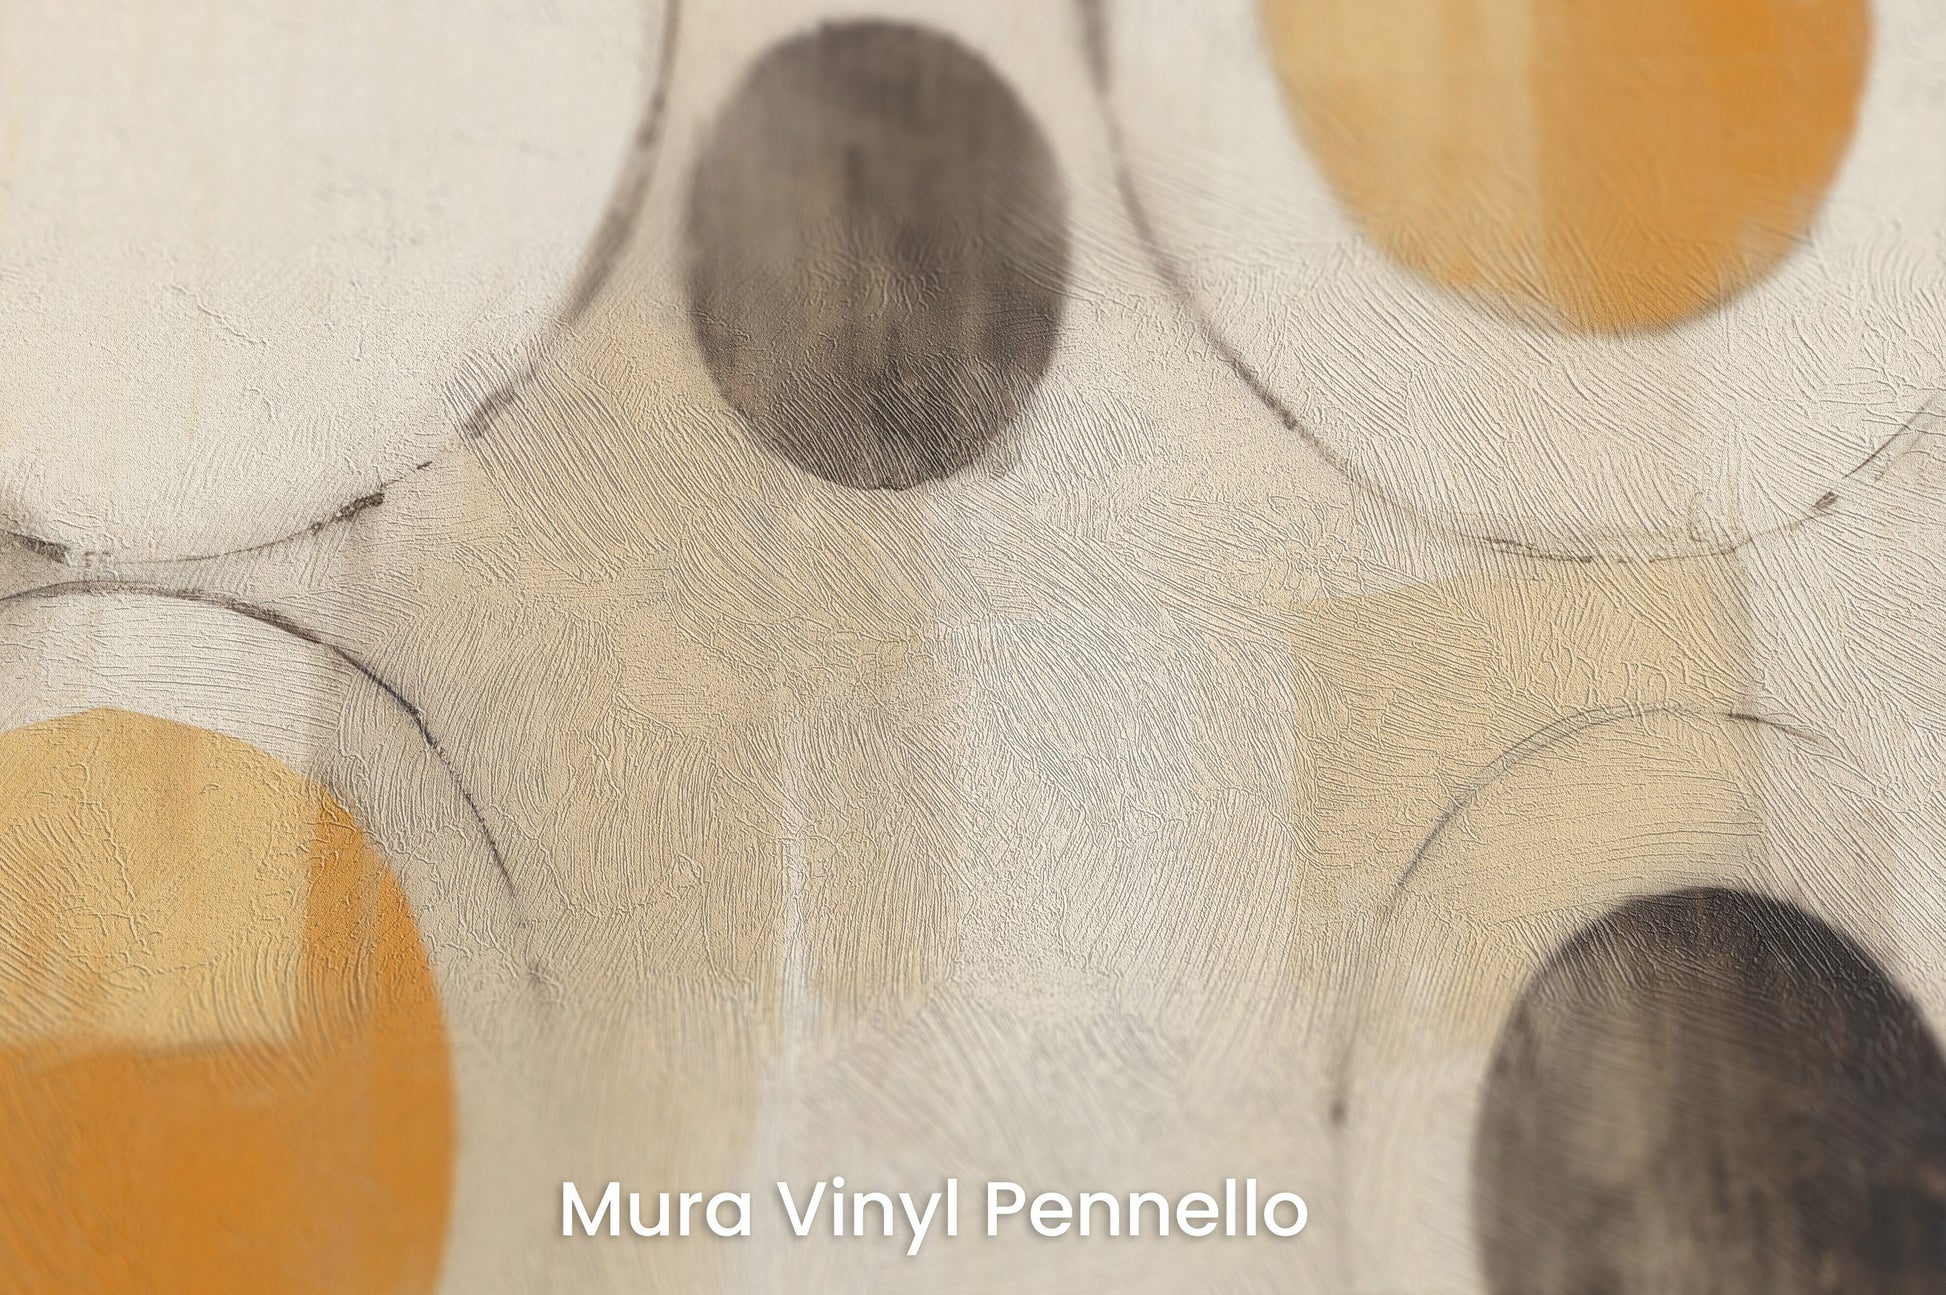 Zbliżenie na artystyczną fototapetę o nazwie SUN-KISSED ORB ARRAY na podłożu Mura Vinyl Pennello - faktura pociągnięć pędzla malarskiego.